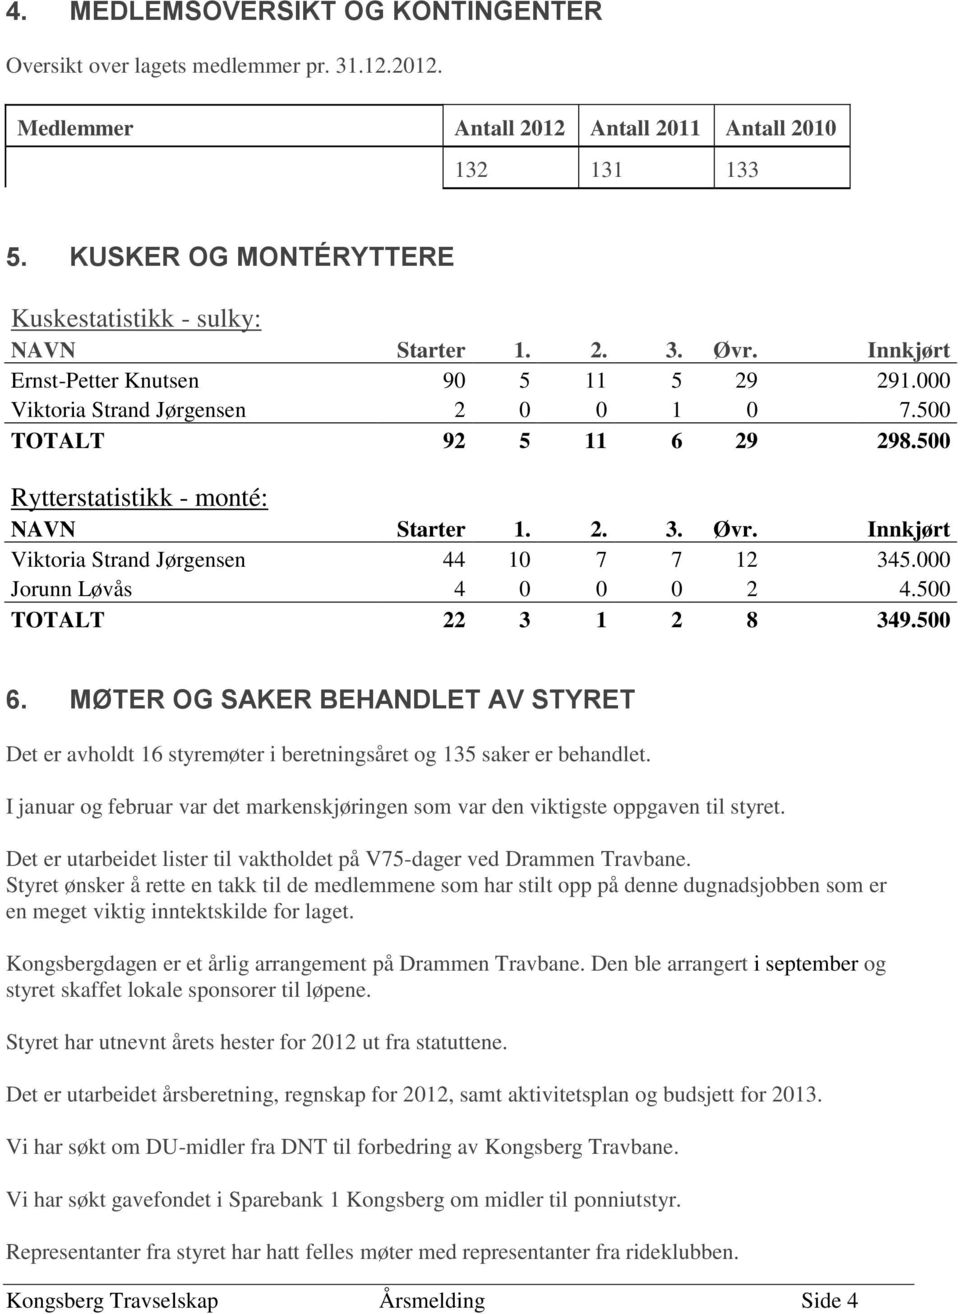 500 Rytterstatistikk - monté: NAVN Starter 1. 2. 3. Øvr. Innkjørt Viktoria Strand Jørgensen 44 10 7 7 12 345.000 Jorunn Løvås 4 0 0 0 2 4.500 TOTALT 22 3 1 2 8 349.500 6.